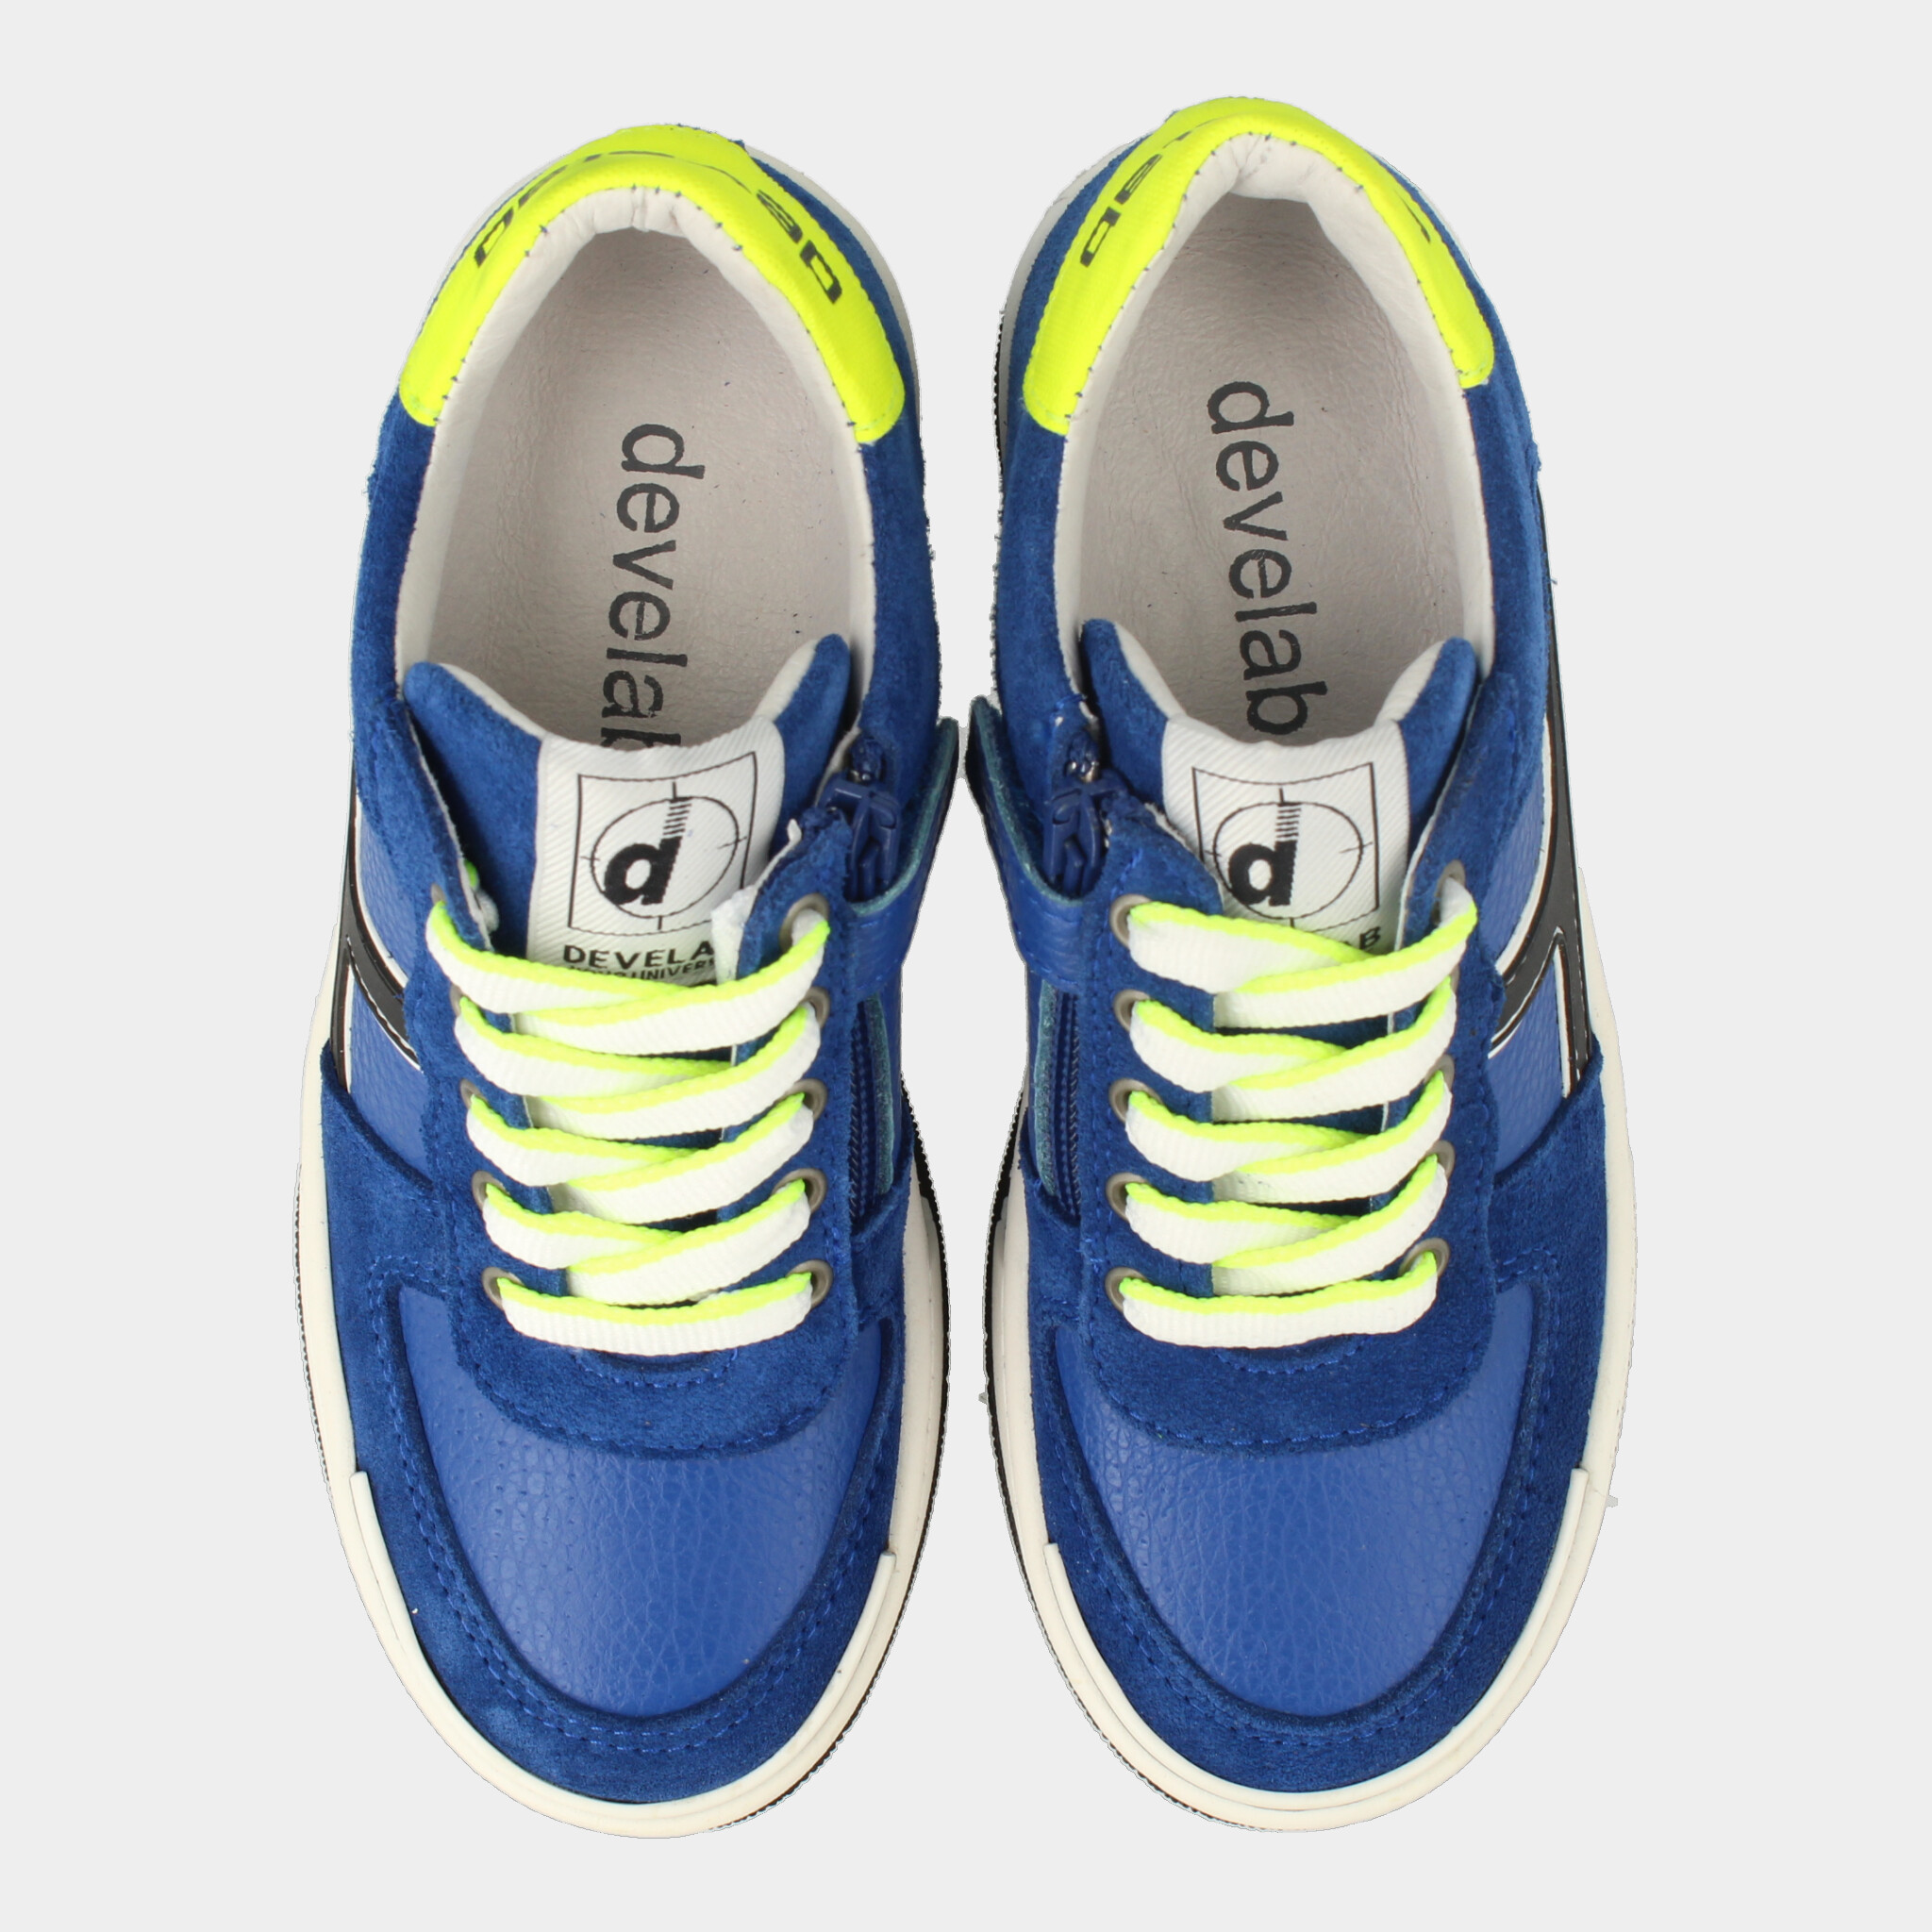 Blauwe Sneakers | Develab 45821